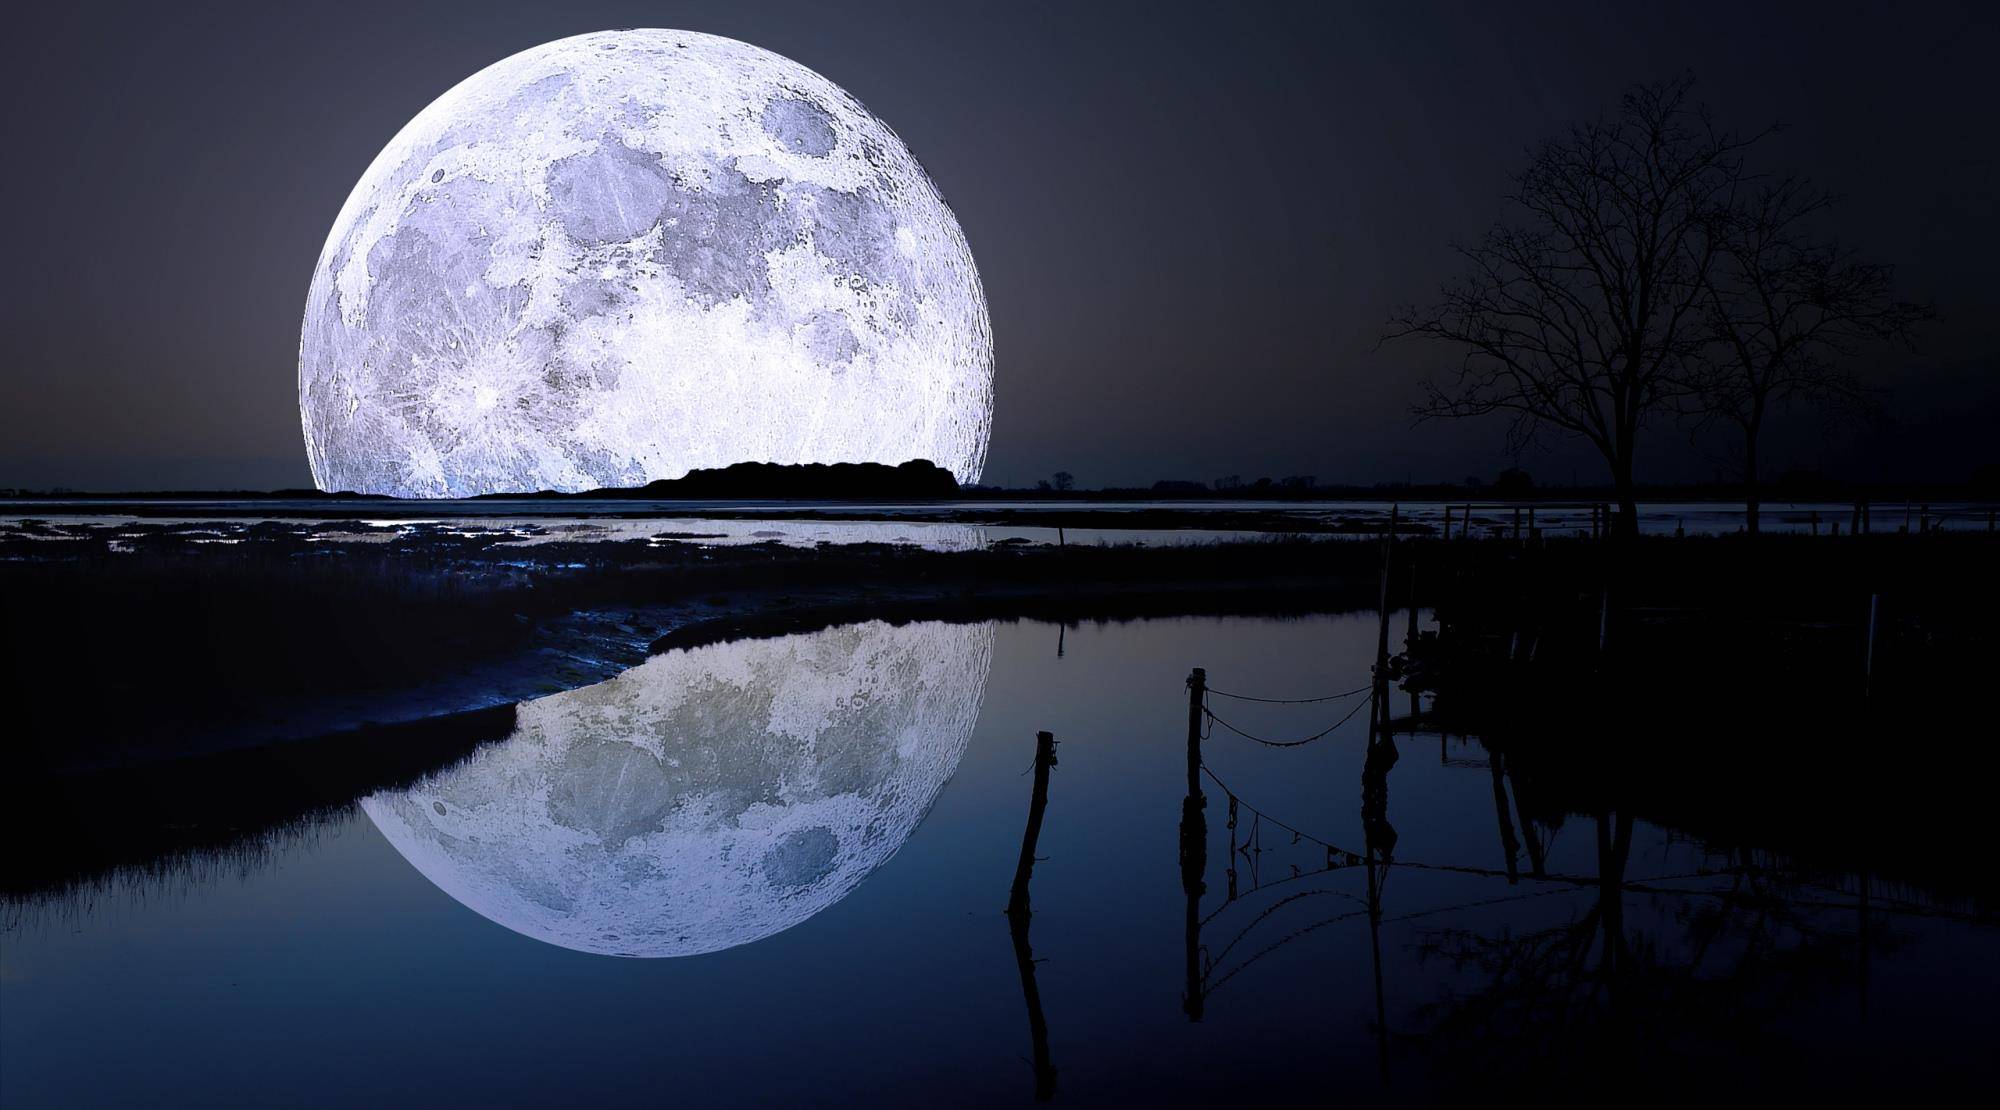 今晚月亮很美\x20下一句 今晚月色真美最佳答复